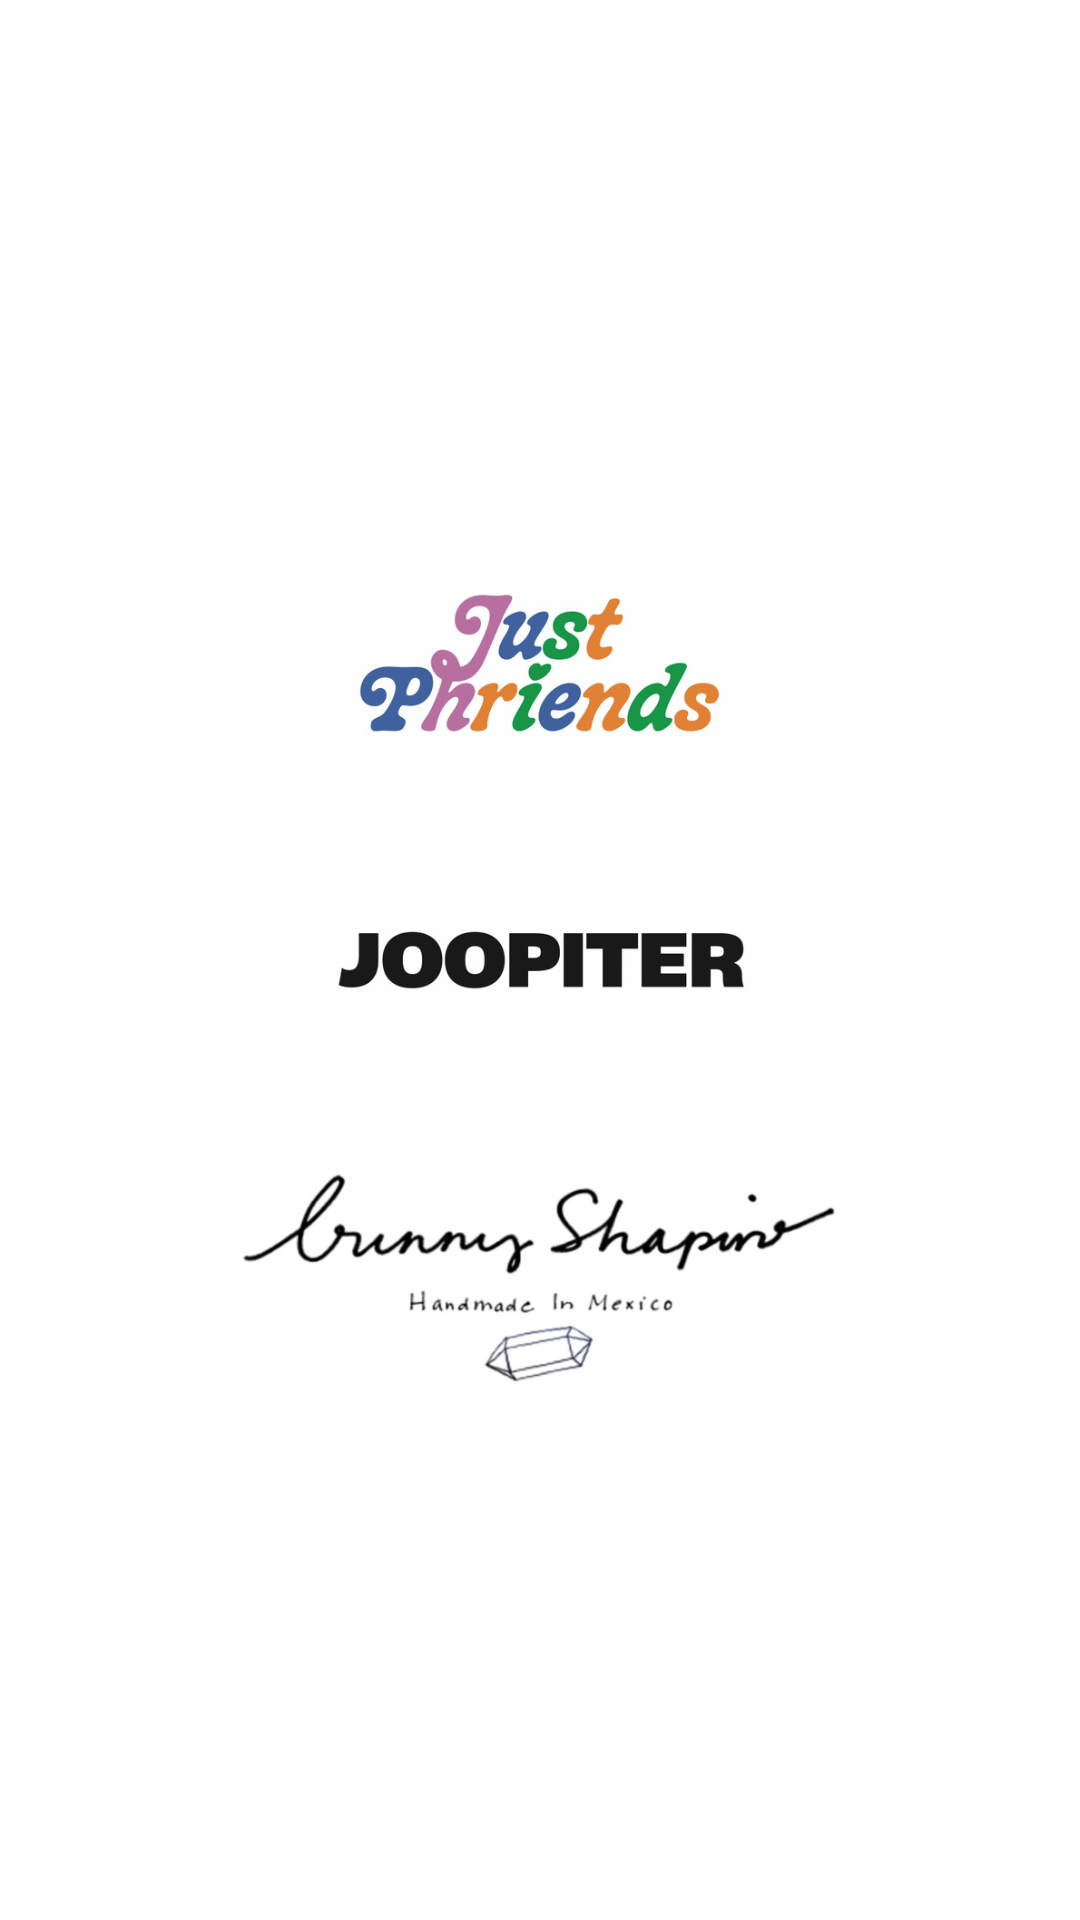 Bunny Shapiro x Joopiter x Pharrell